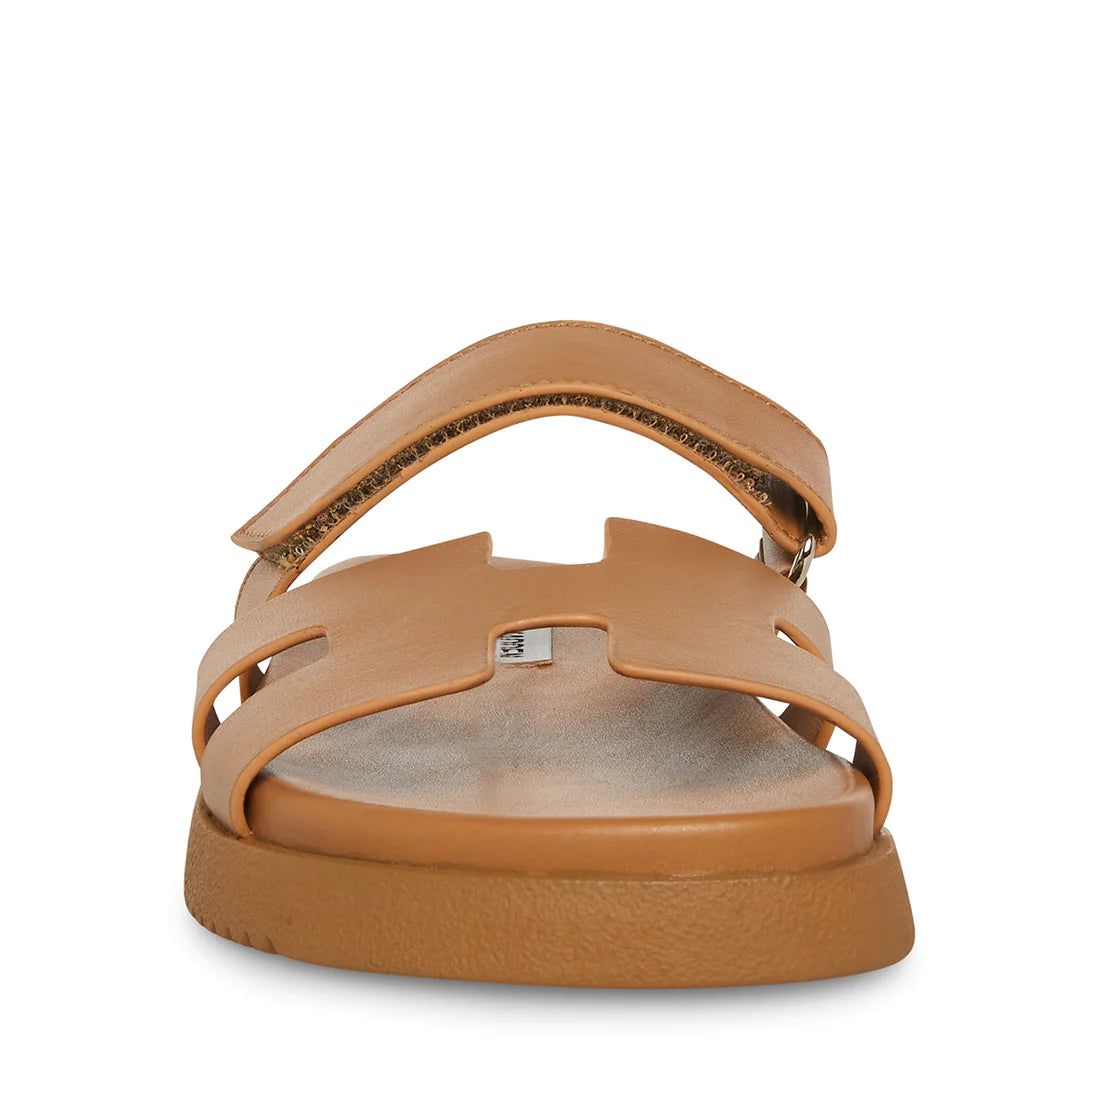 Steve Madden - Mayven Flatform Sandal in Tan Leather